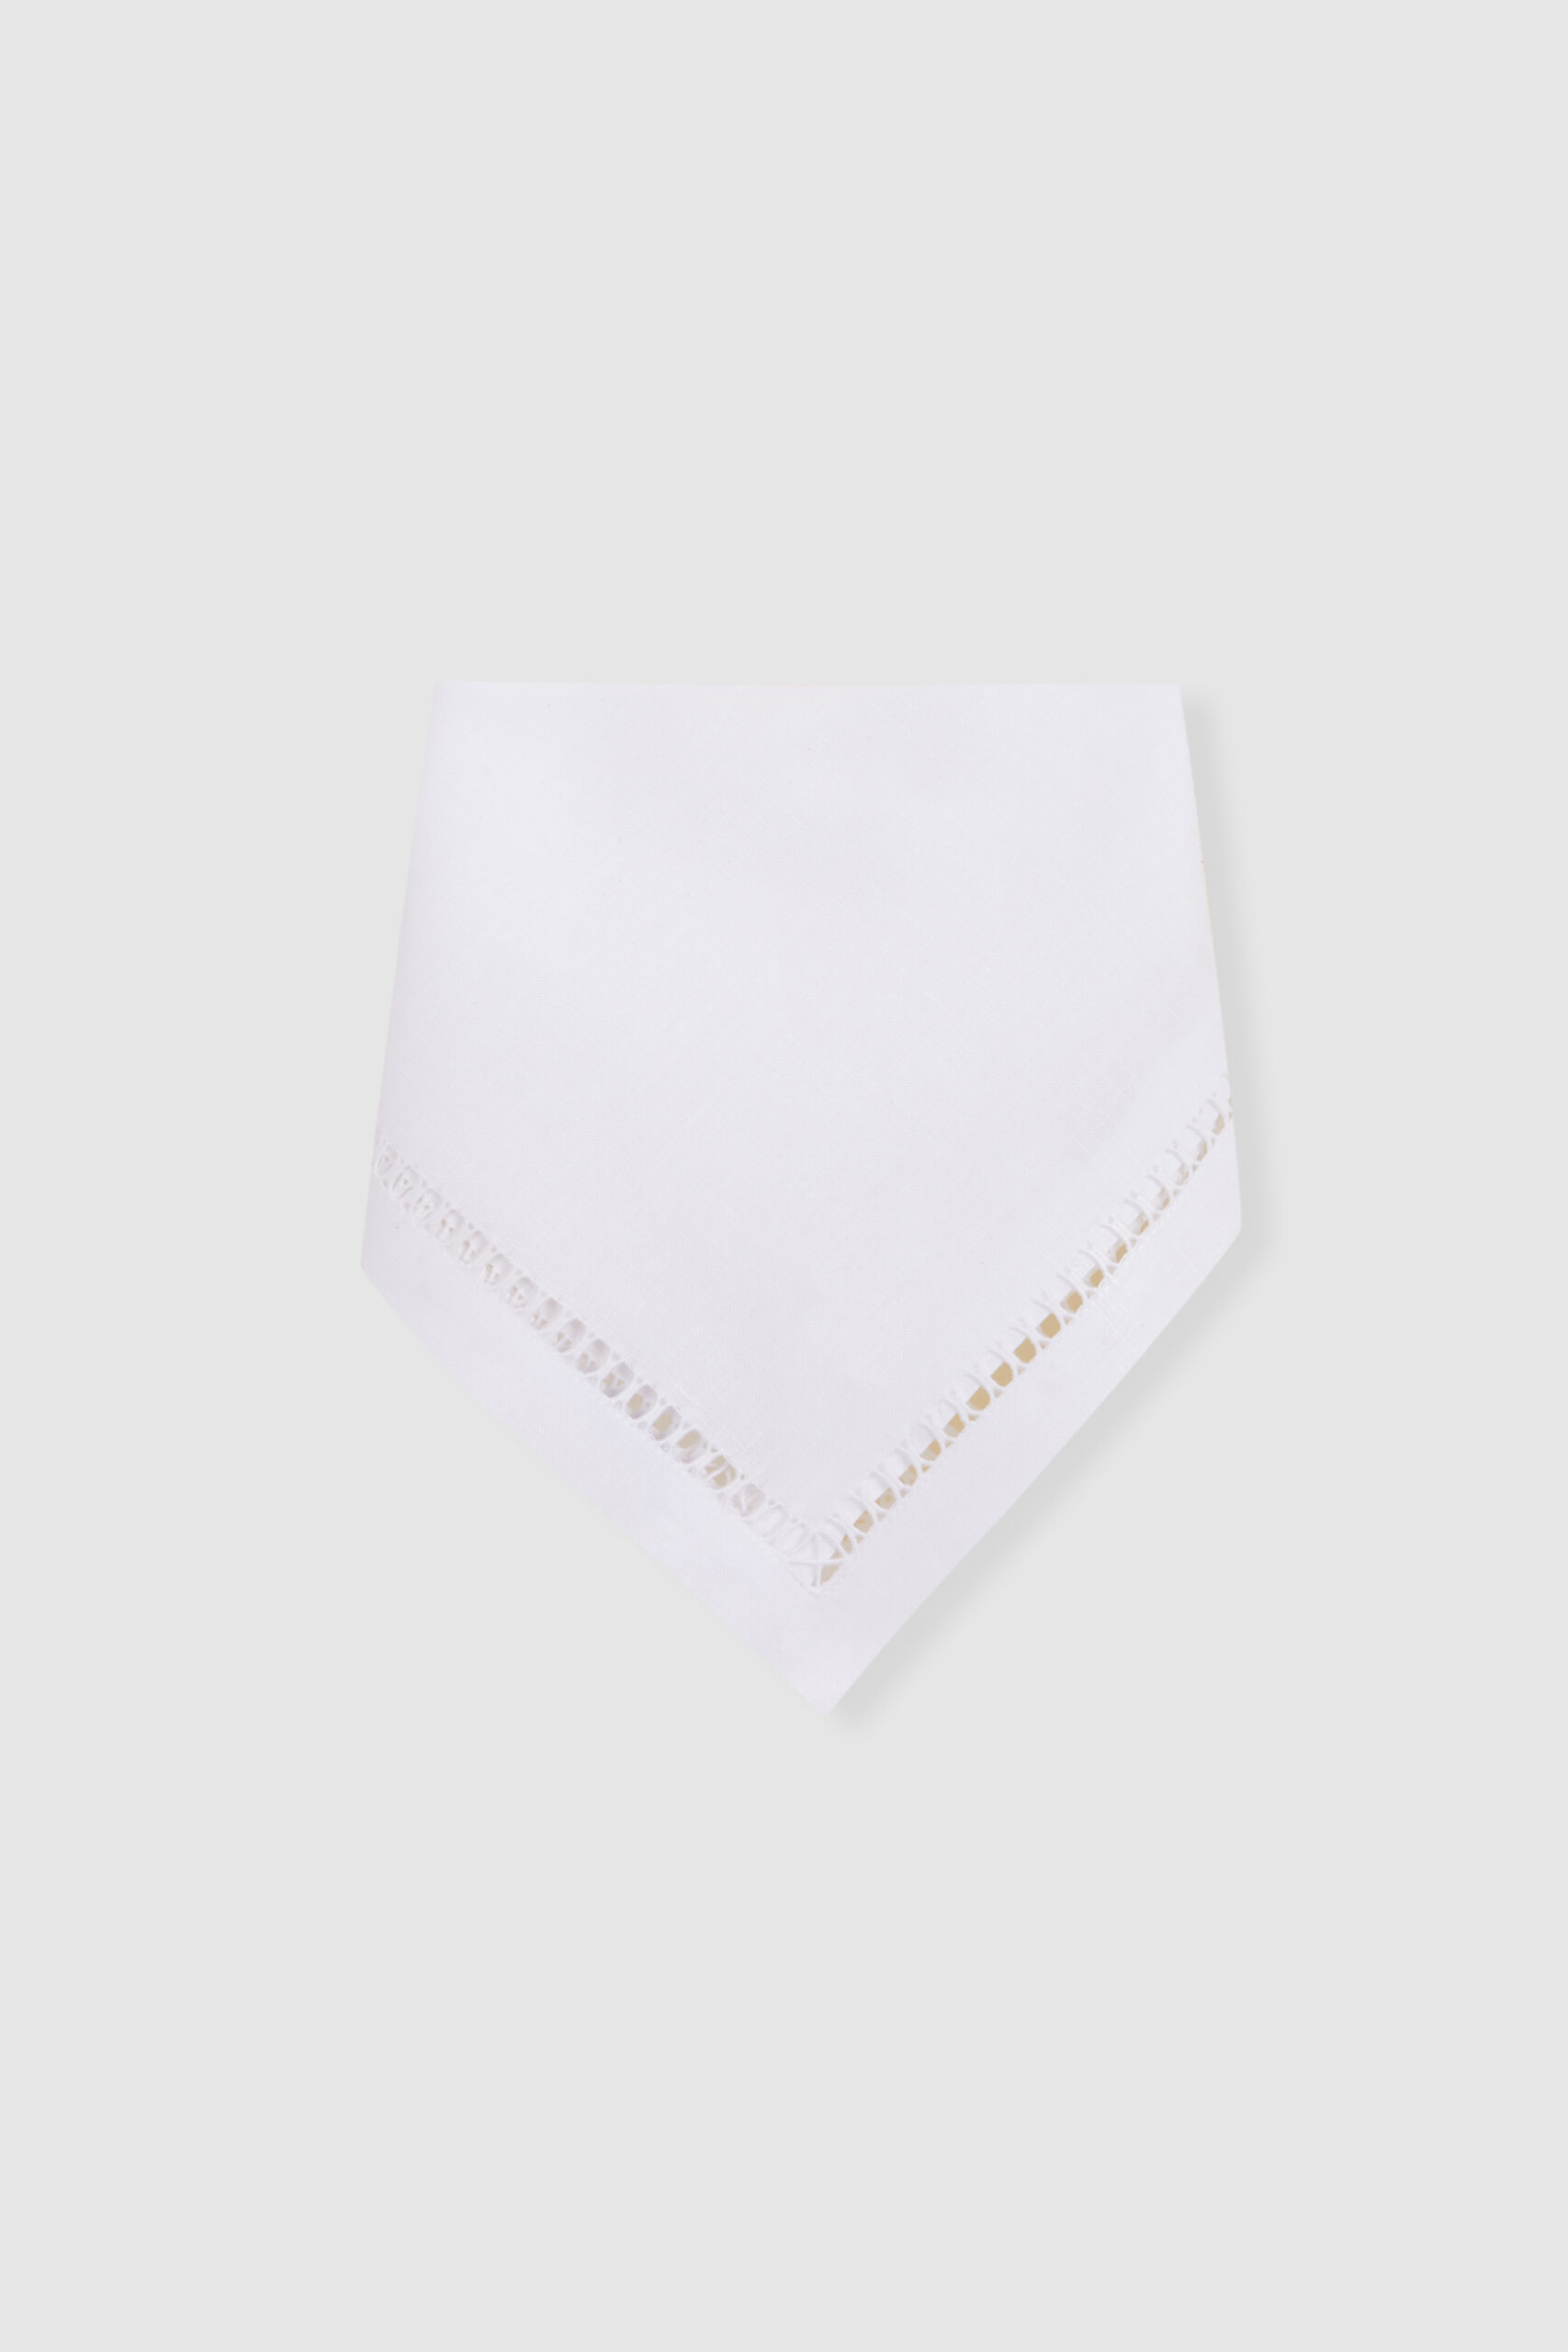 tokyo white linen napkin